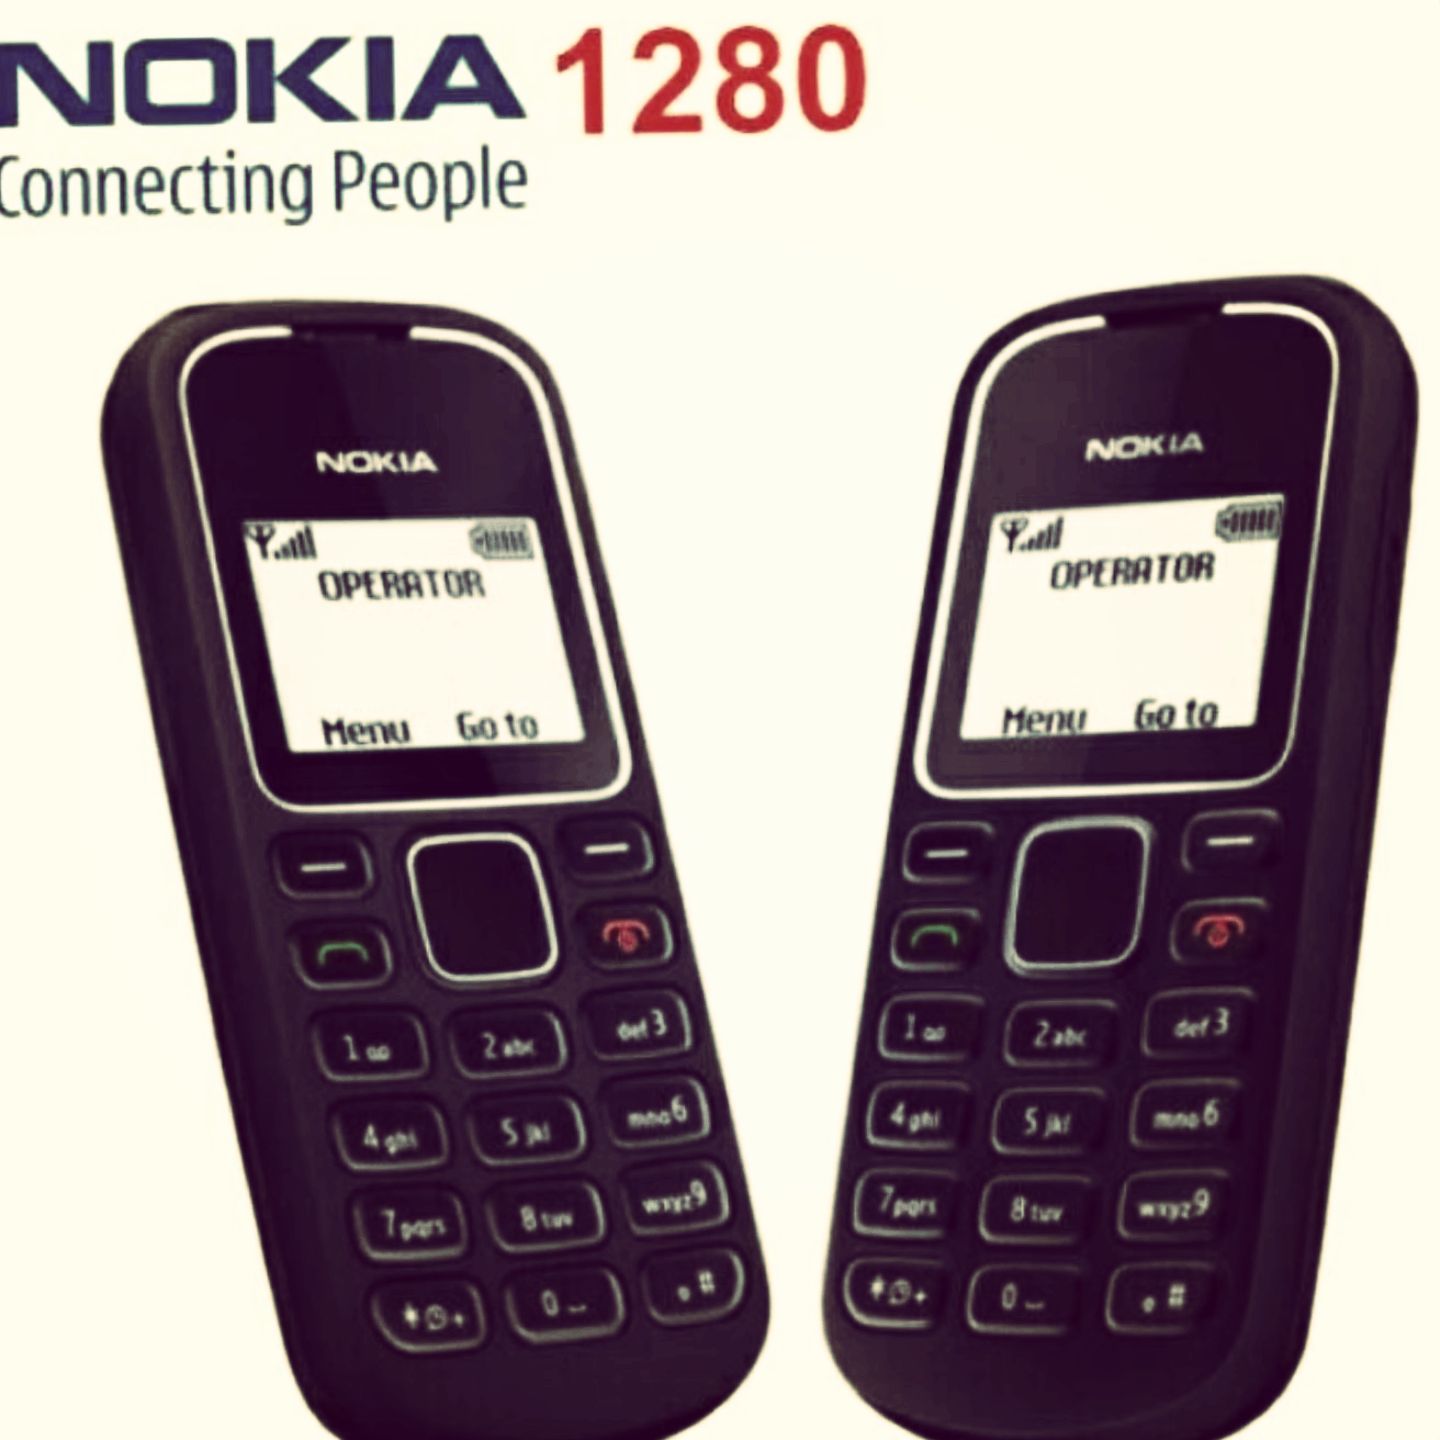 99 Hình Nền Nokia Cục Gạch 1280 1208 Đẹp Độc Đáo Quá Đi